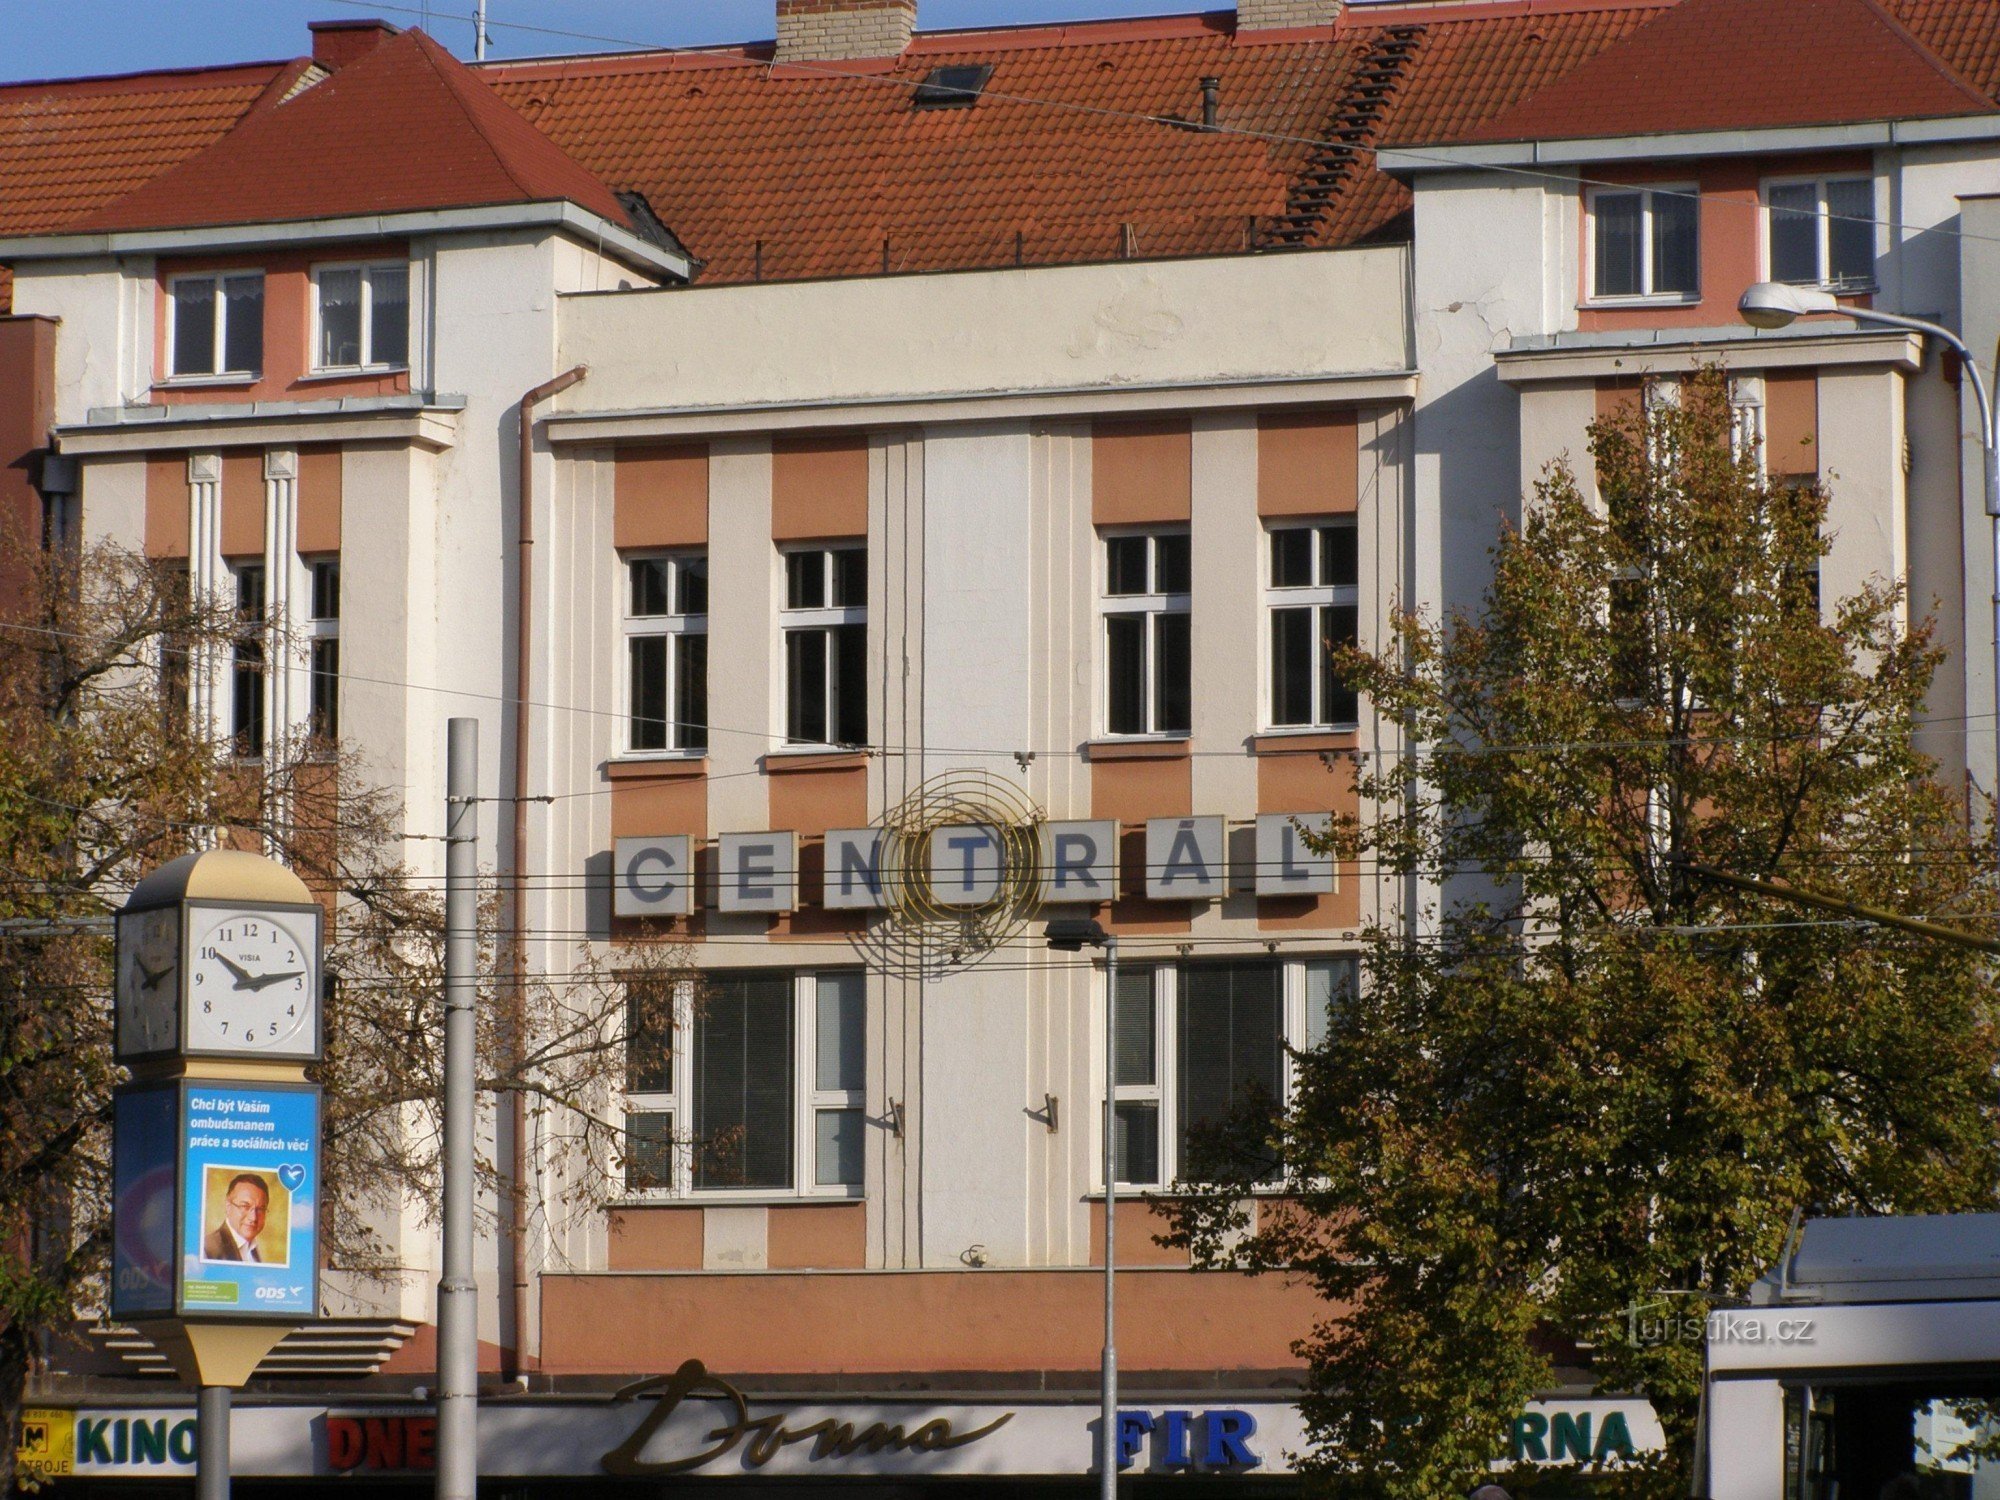 Hradec Králové - elokuvateatteri Centrál